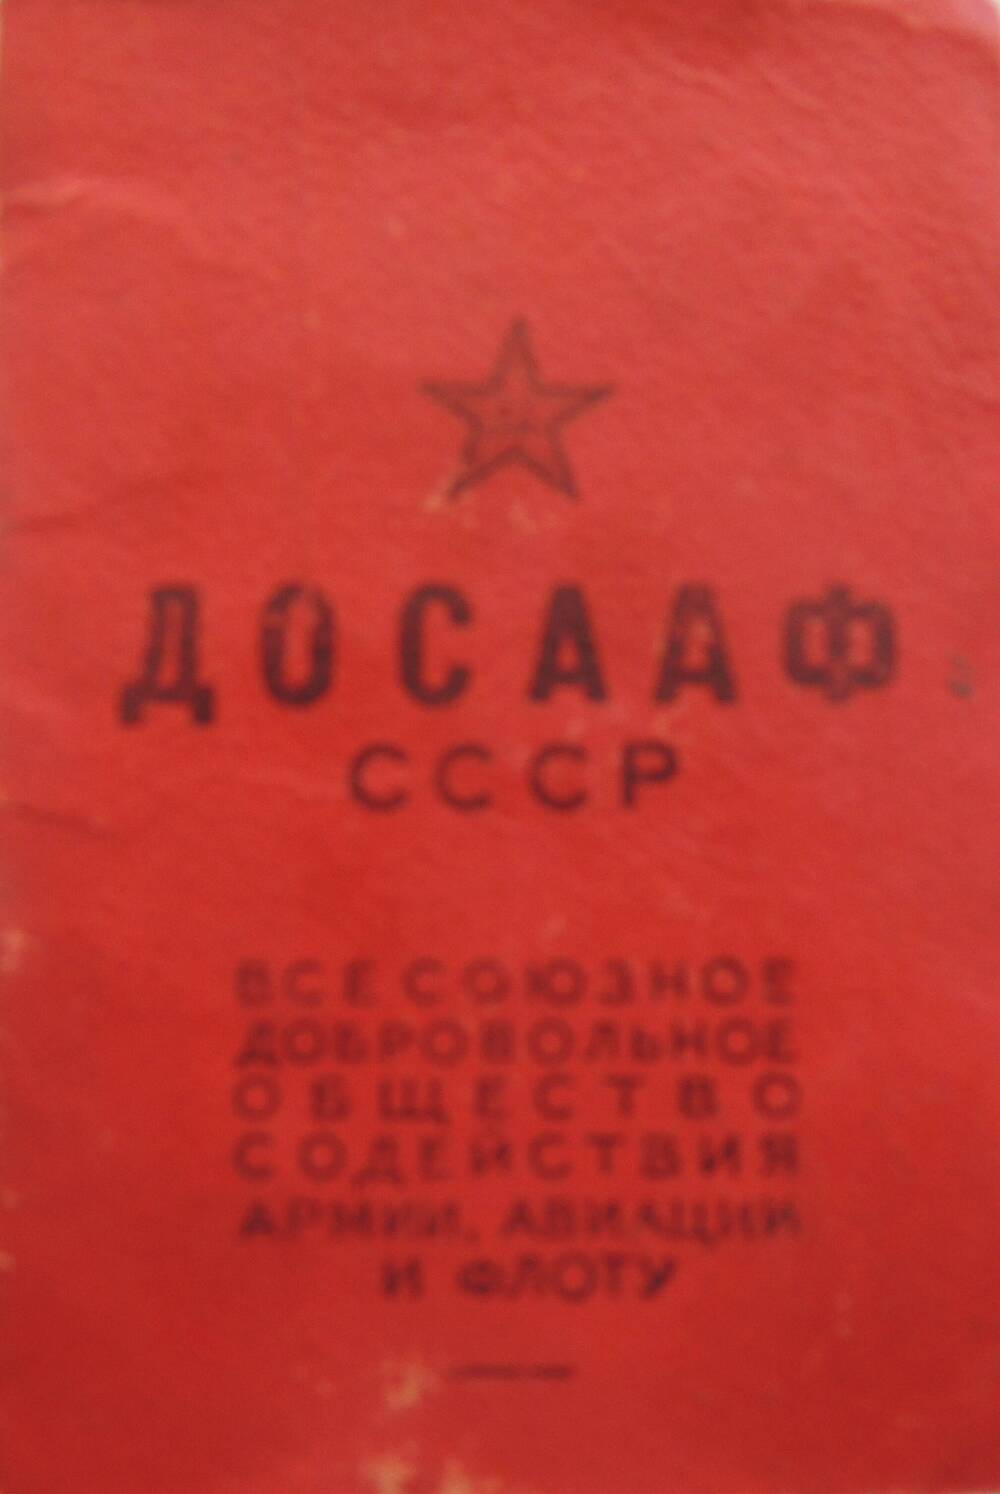 Членский билет ДОСААФ СССР на имя Бреус В.Л. с 1957 - 1960 гг.